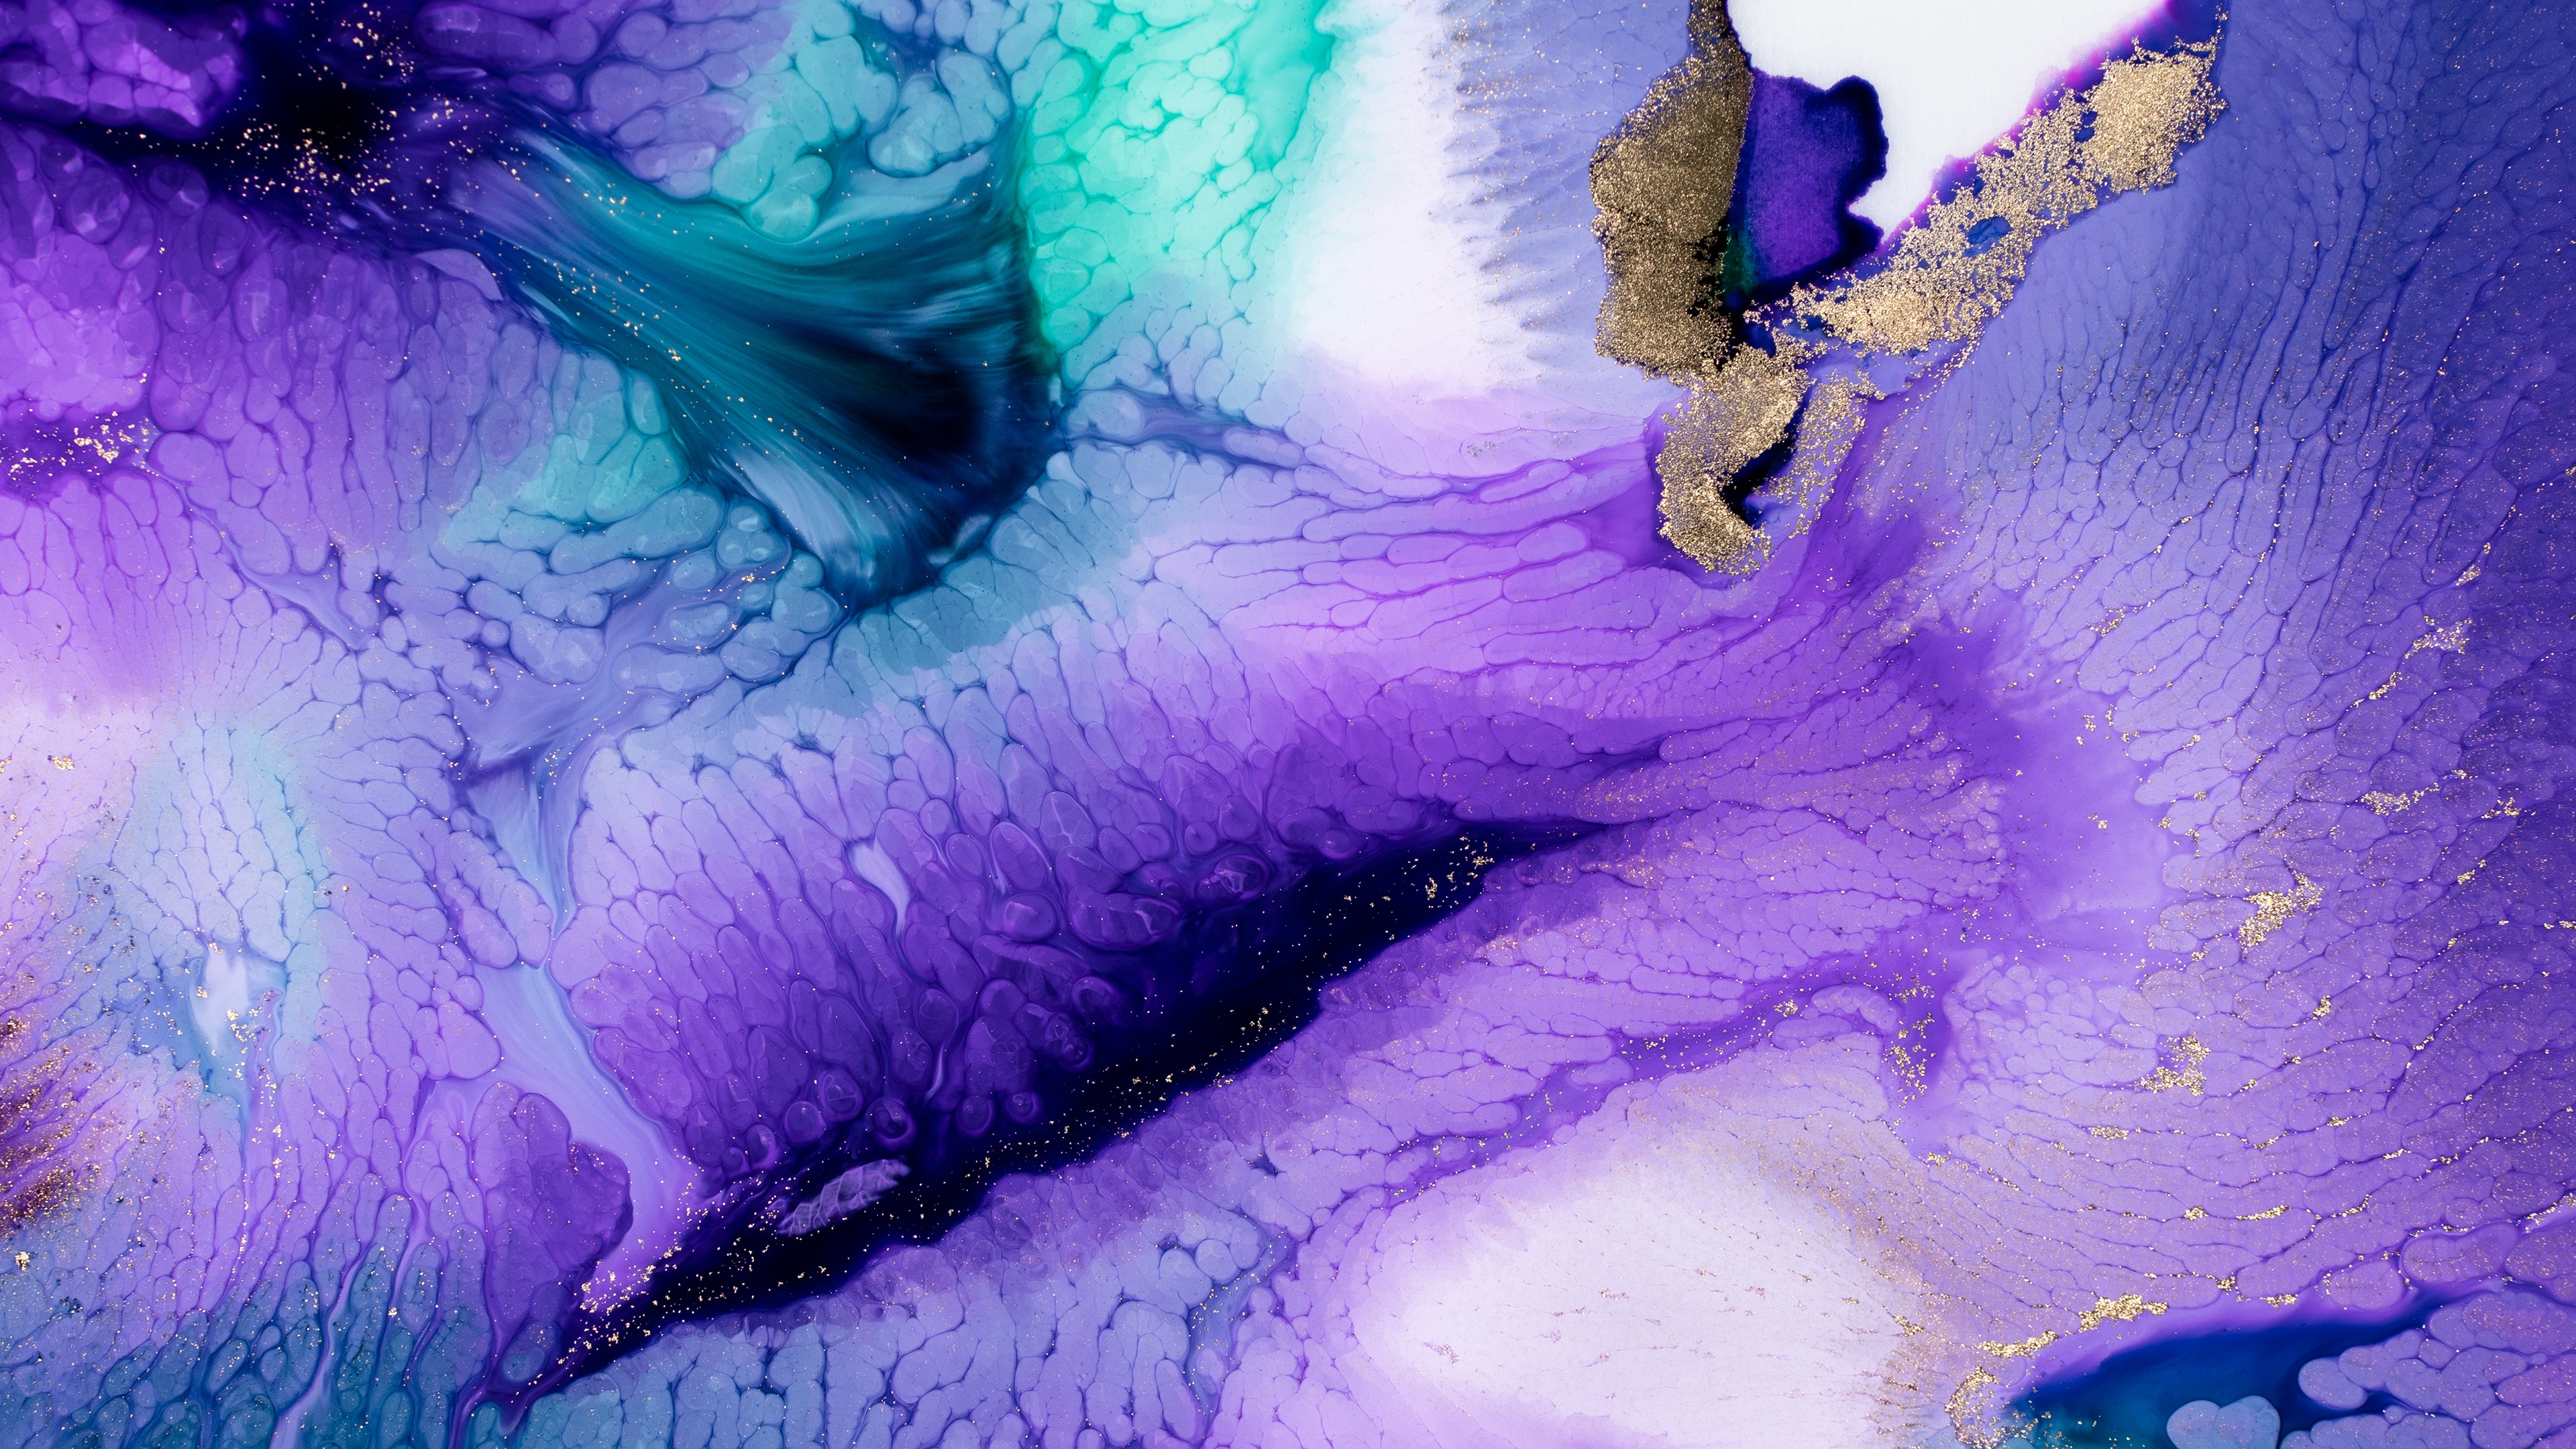 Bộ ảnh về nghệ thuật sáng tạo với nước đang chảy trong không khí sẽ mang đến sự bùng nổ và độc đáo cho không gian sống của bạn. Hãy nhanh tay xem và khám phá các tác phẩm nghệ thuật đầy màu sắc này ngay.